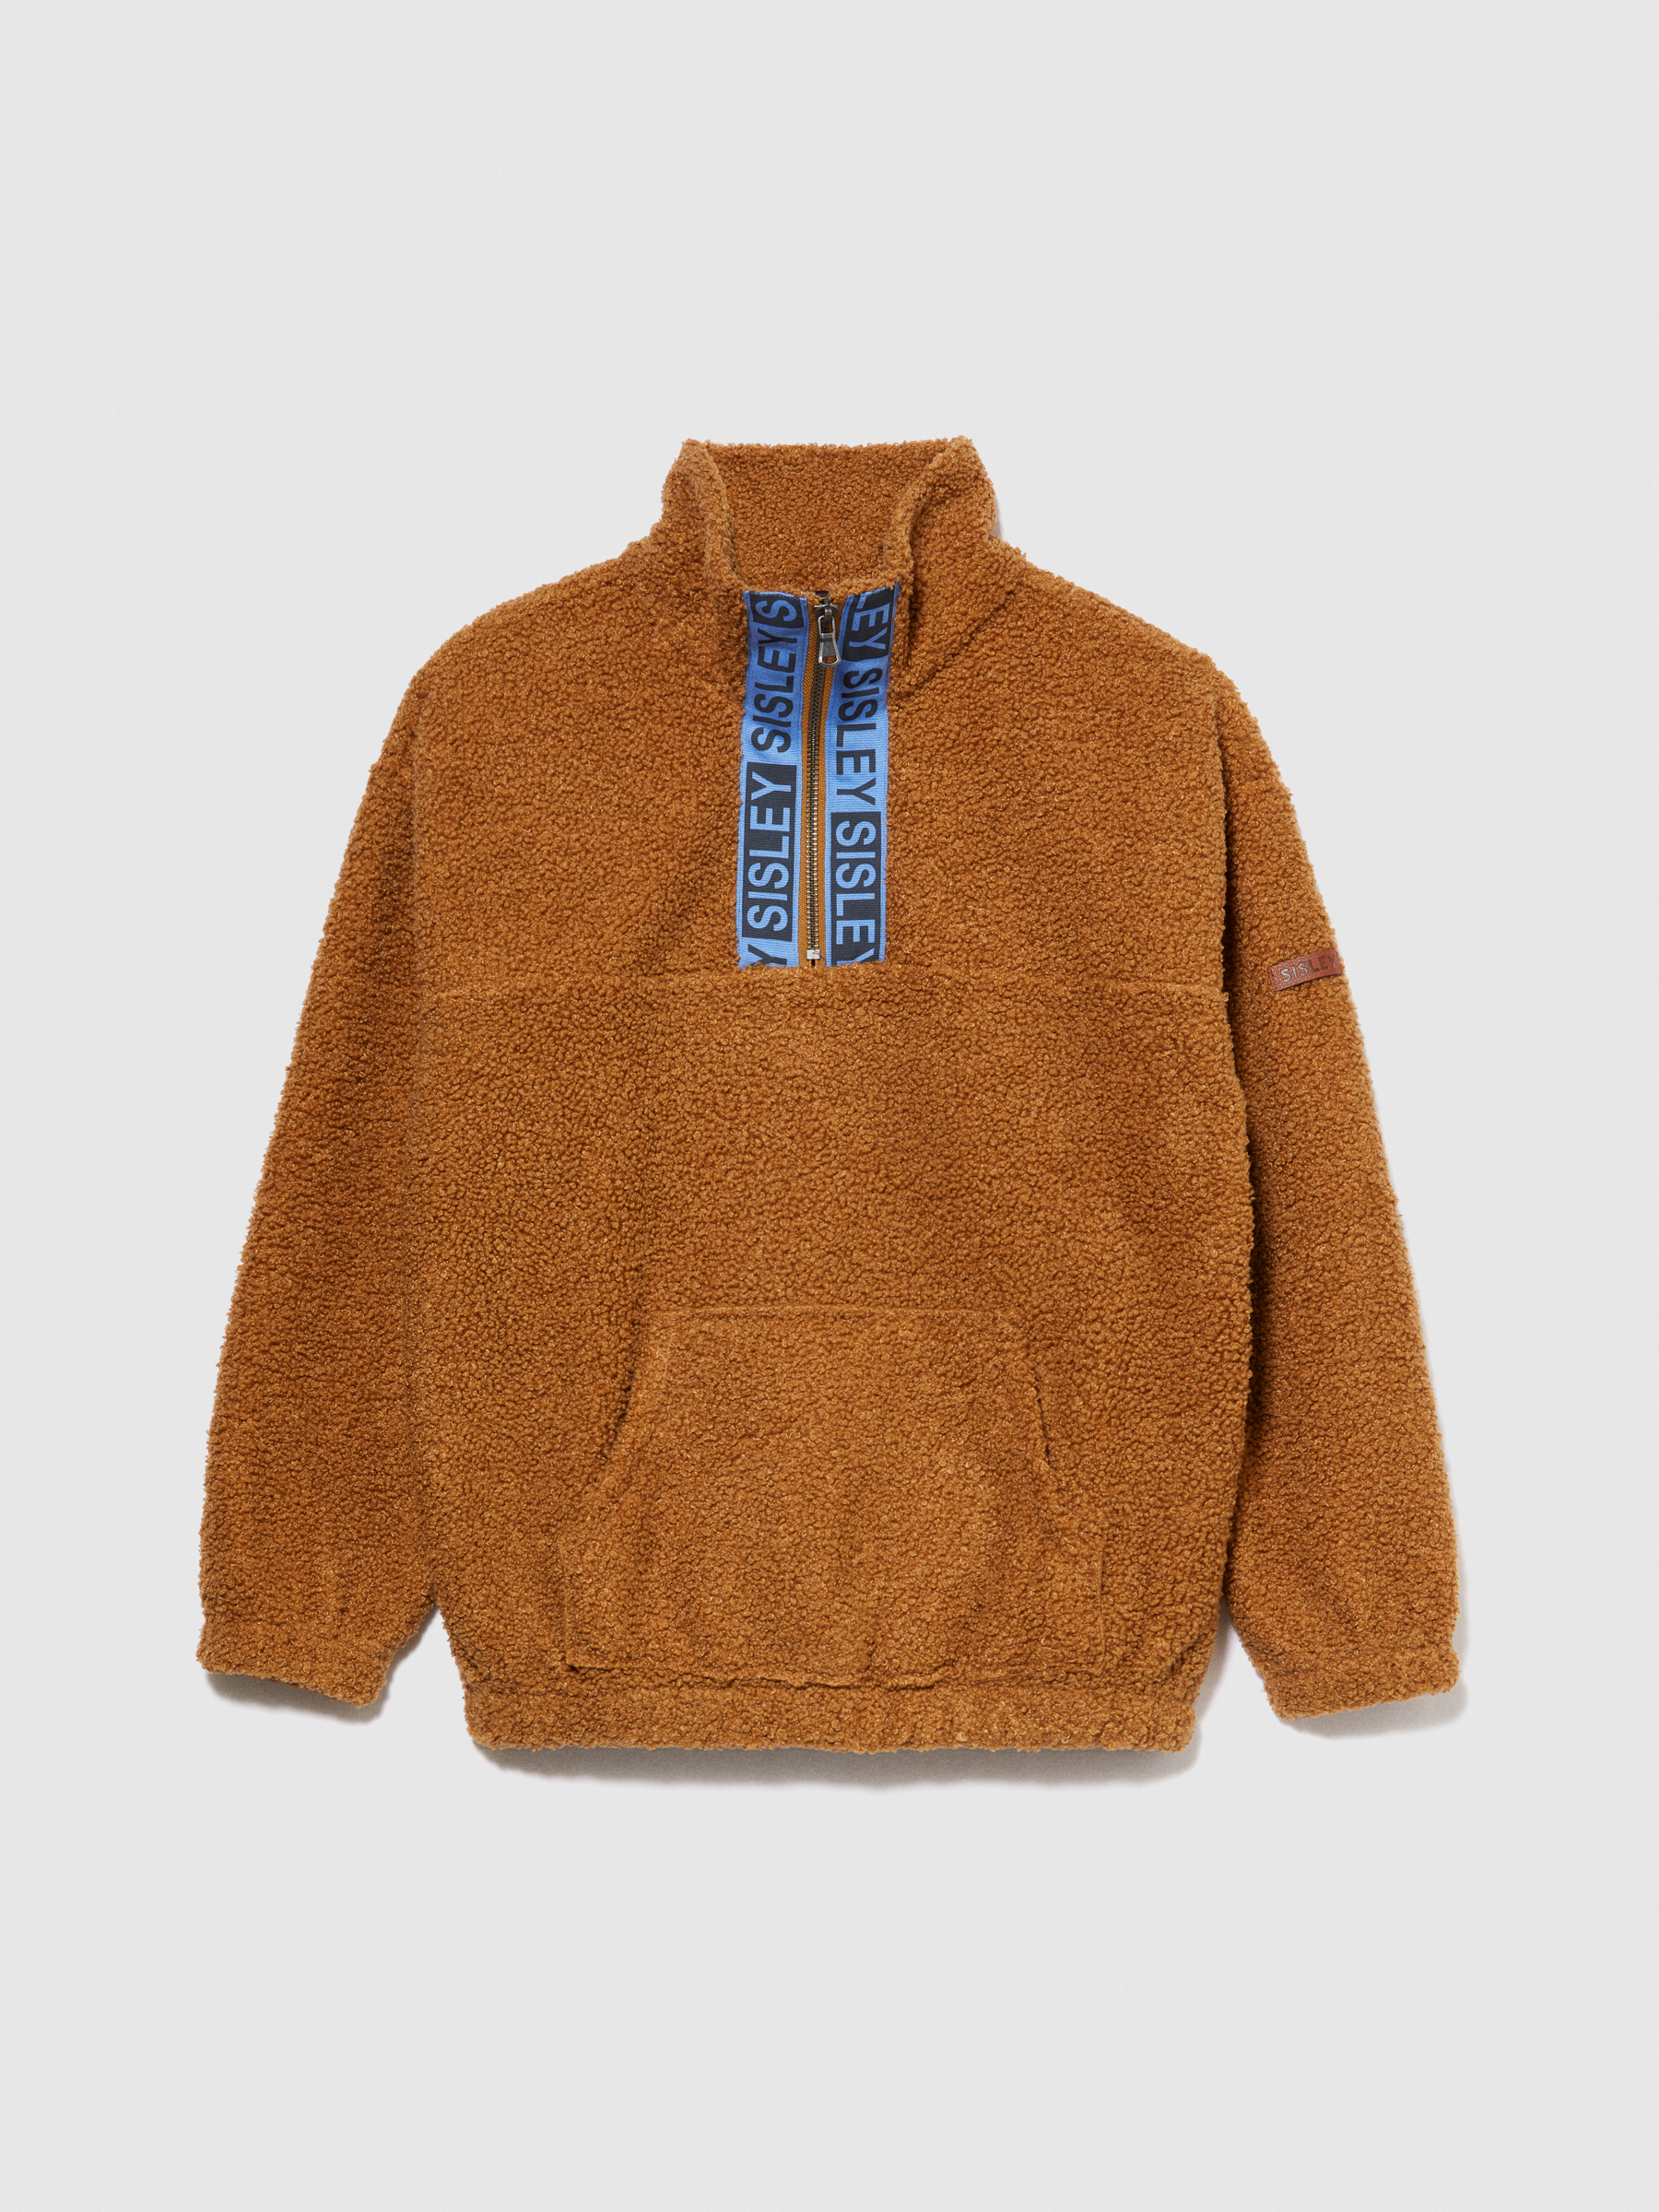 Sisley Young - Teddy Sweatshirt With Logo Band, Man, Camel, Size: XS